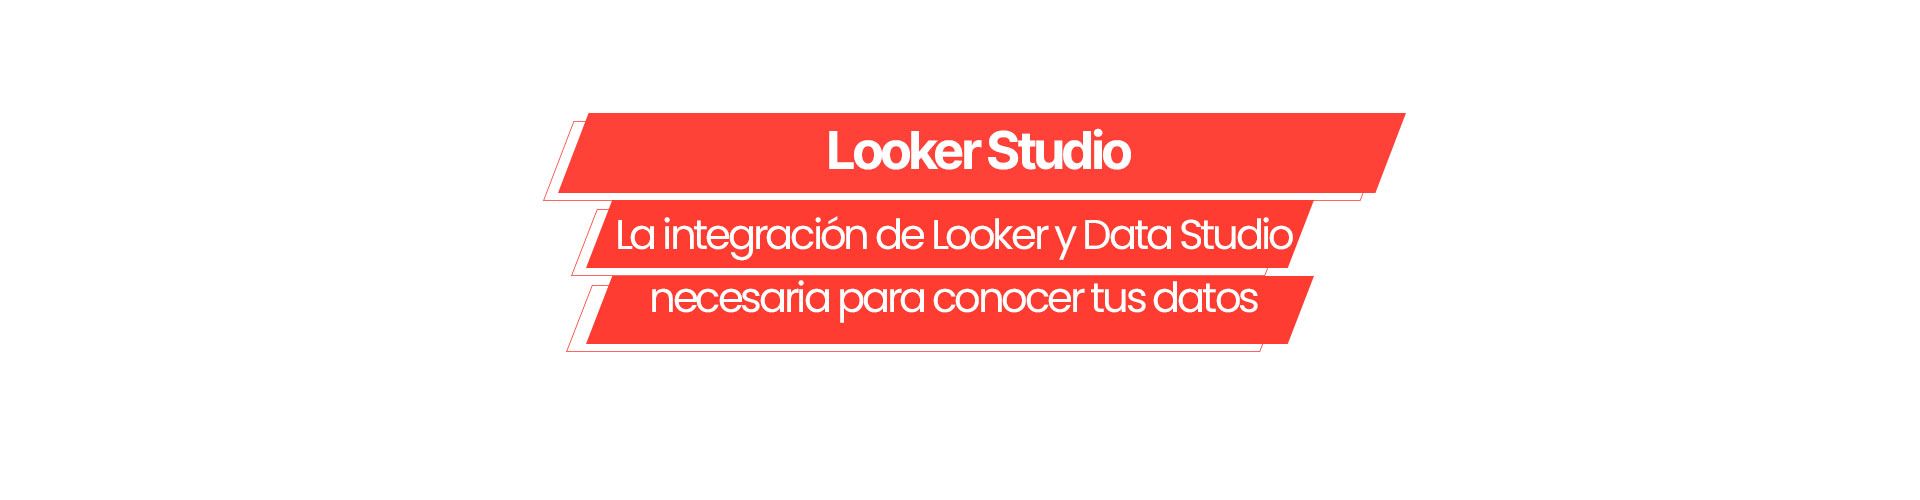 looker studio Looker Studio: La integración de Looker y Data Studio necesaria para conocer tus datos